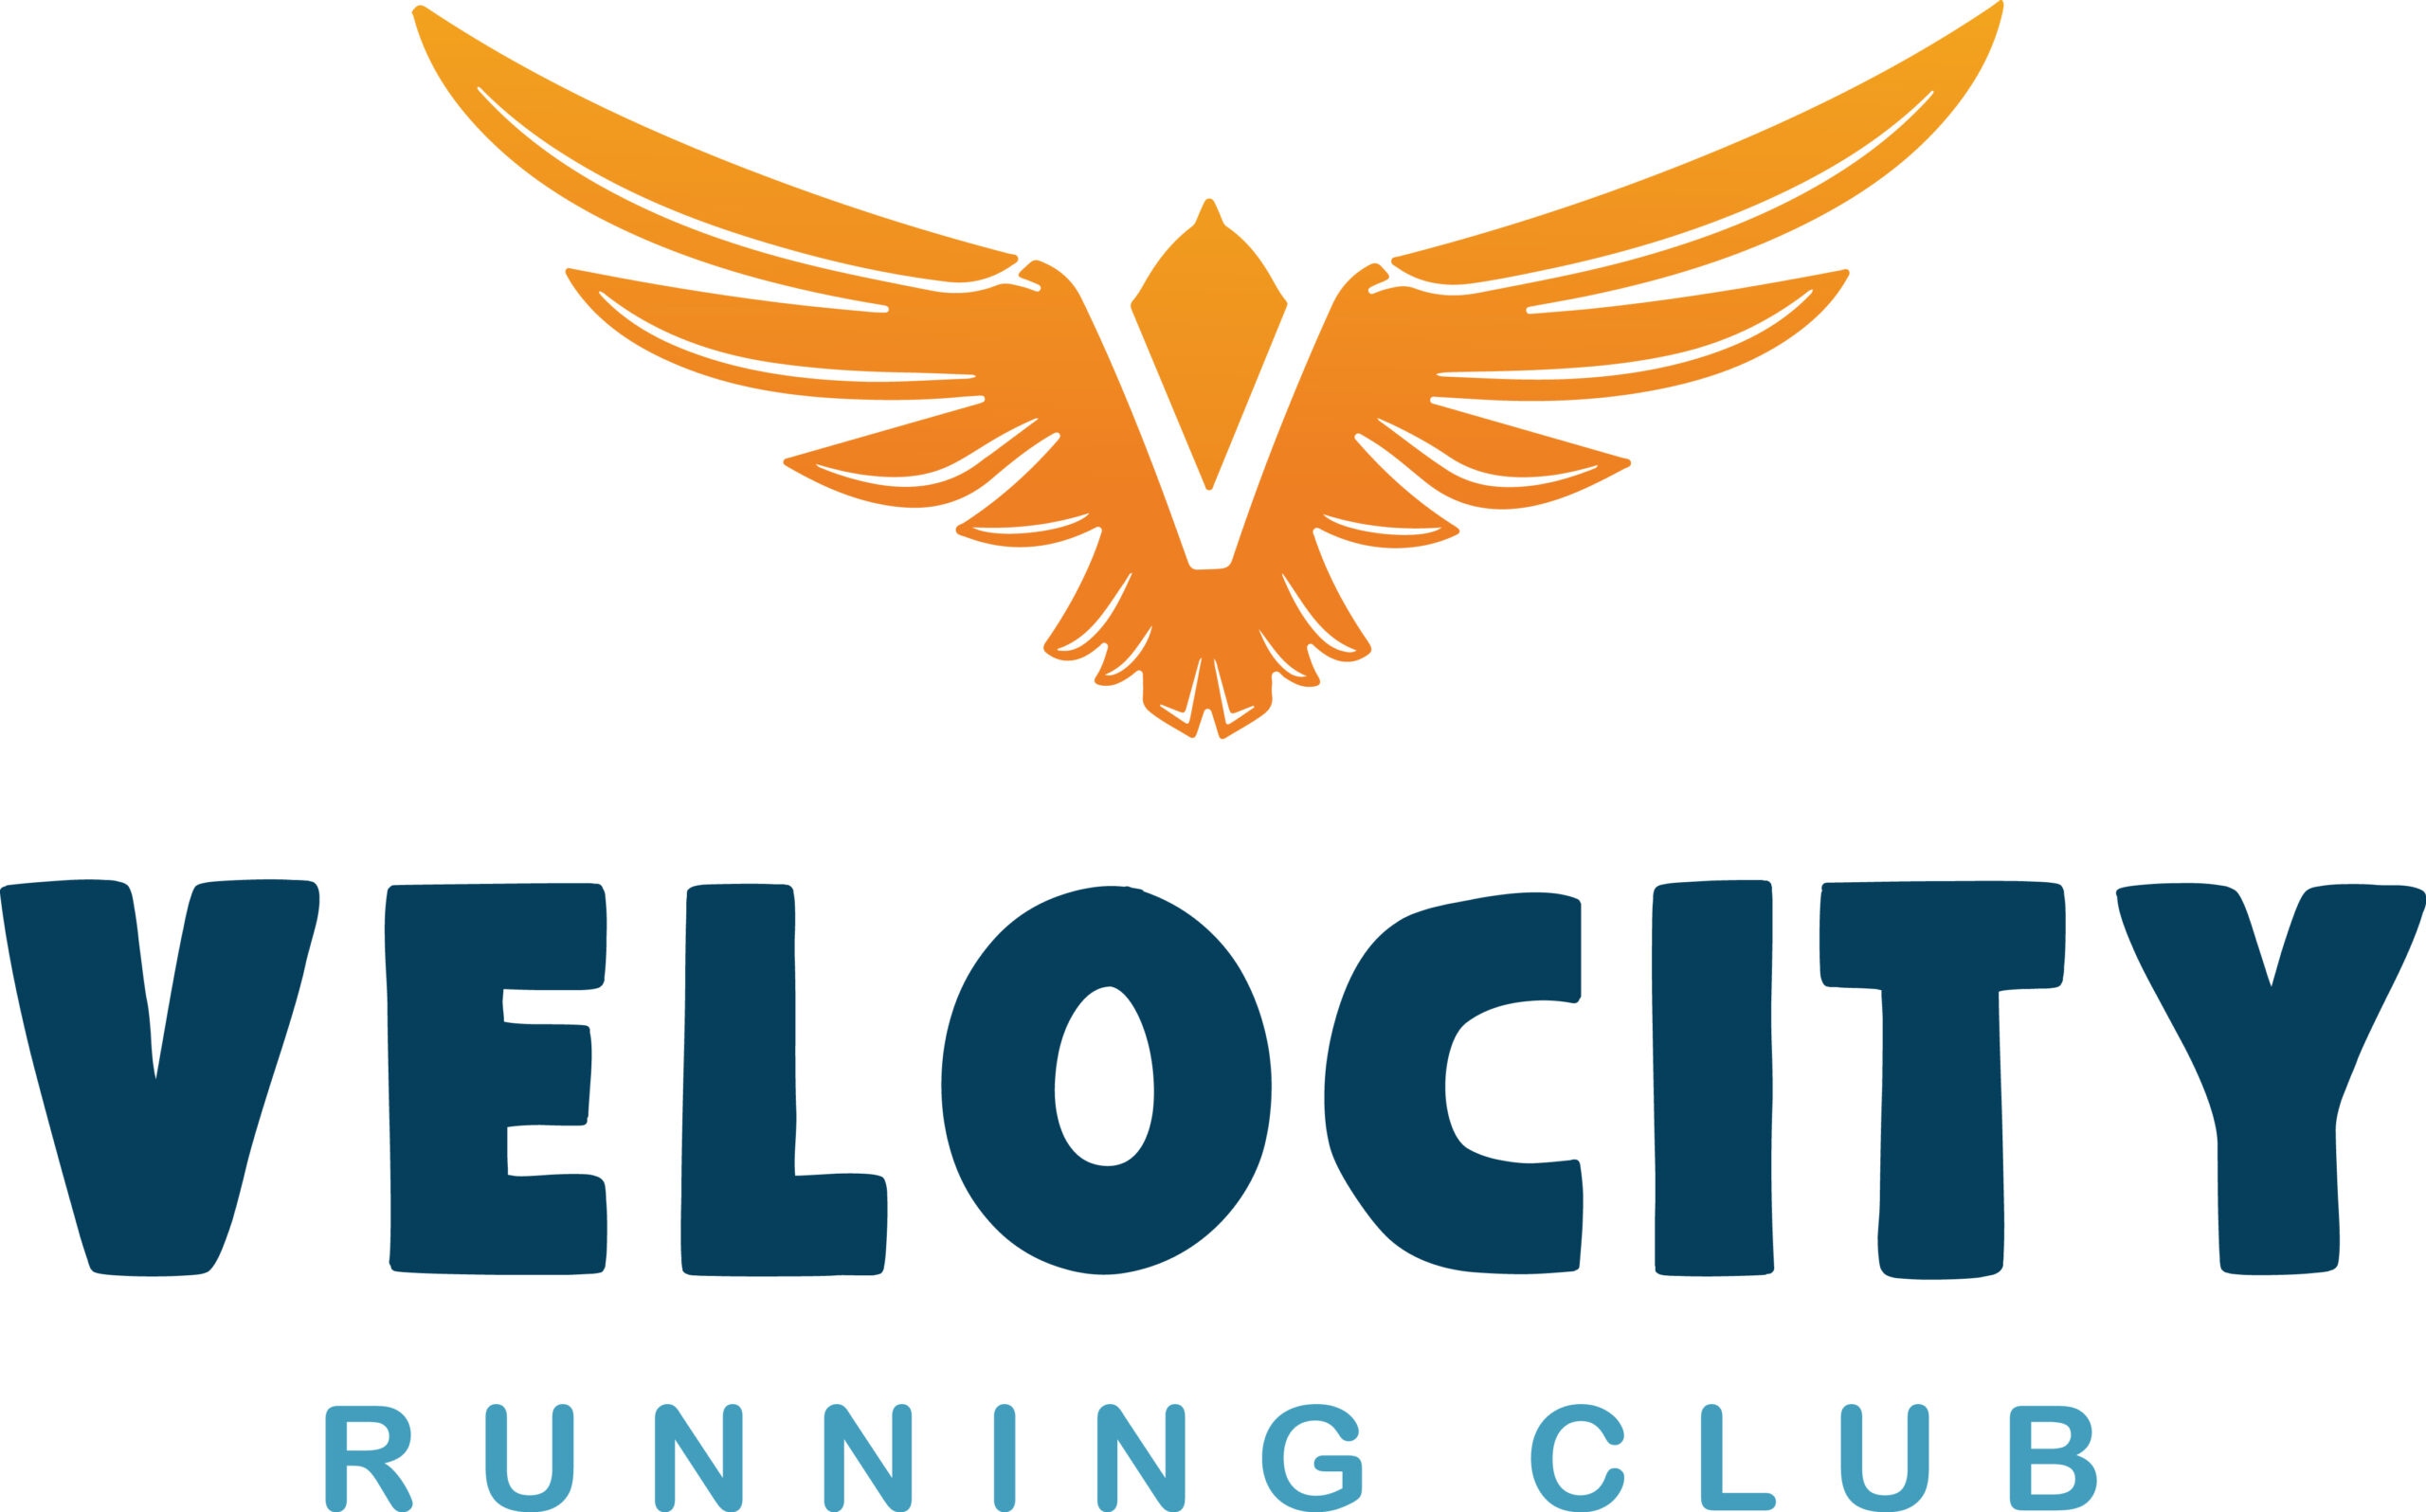 Velocity Running Club